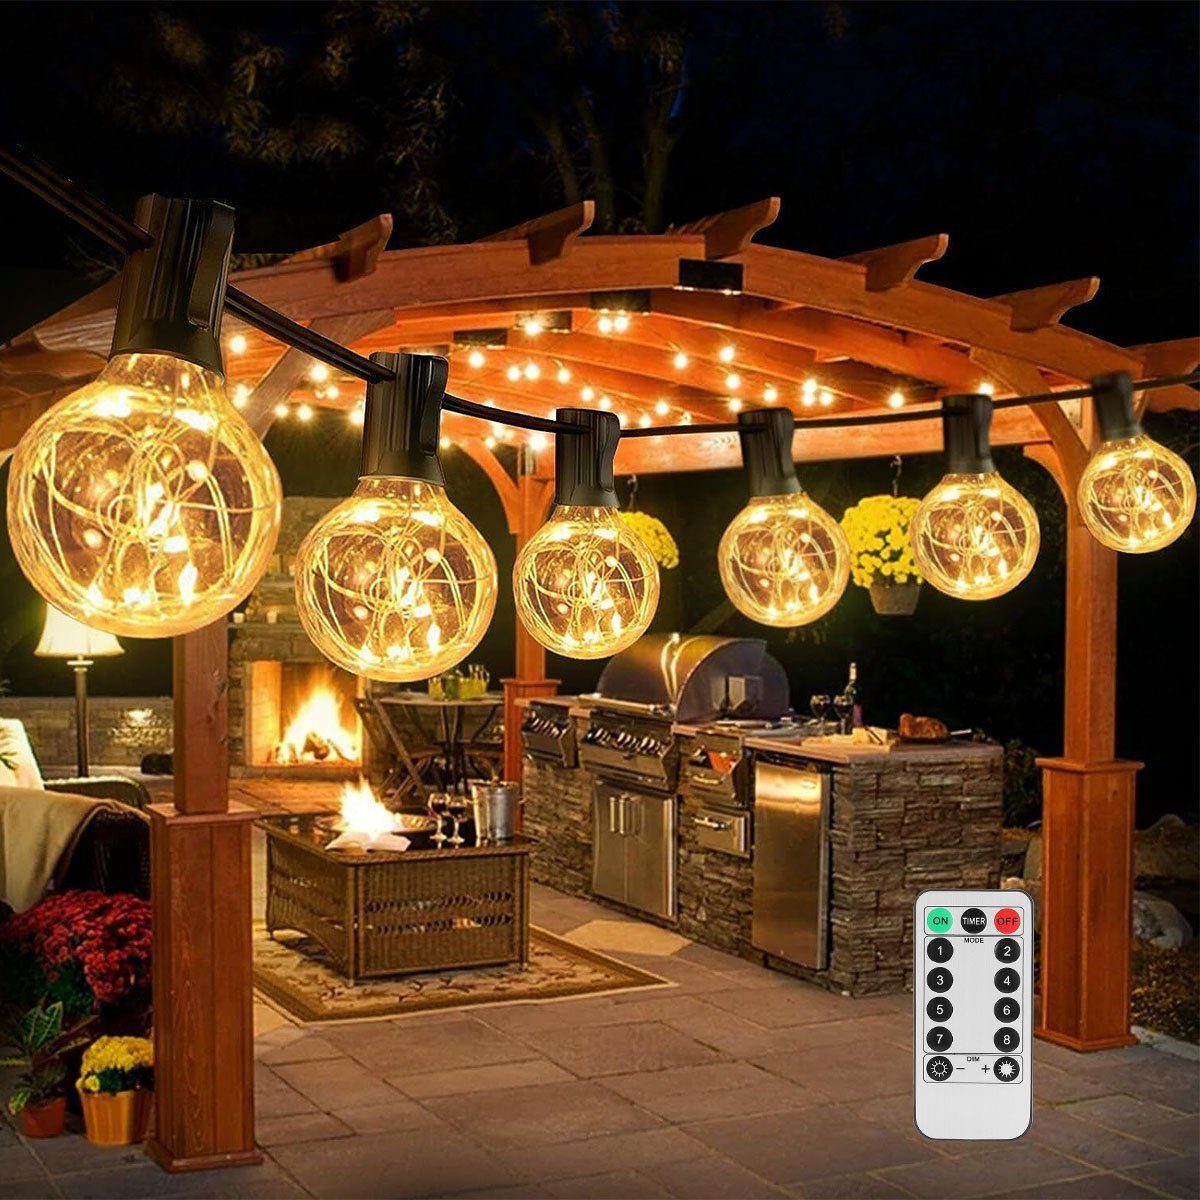 oyajia LED-Lichterkette LED Lichterkette Außen, 10M Lichterkette mit 25+2  Stk. G40 Glühbirnen, IP44 Wasserdicht Innen/Außen Lichterkette für Garten,  Terrasse, Party